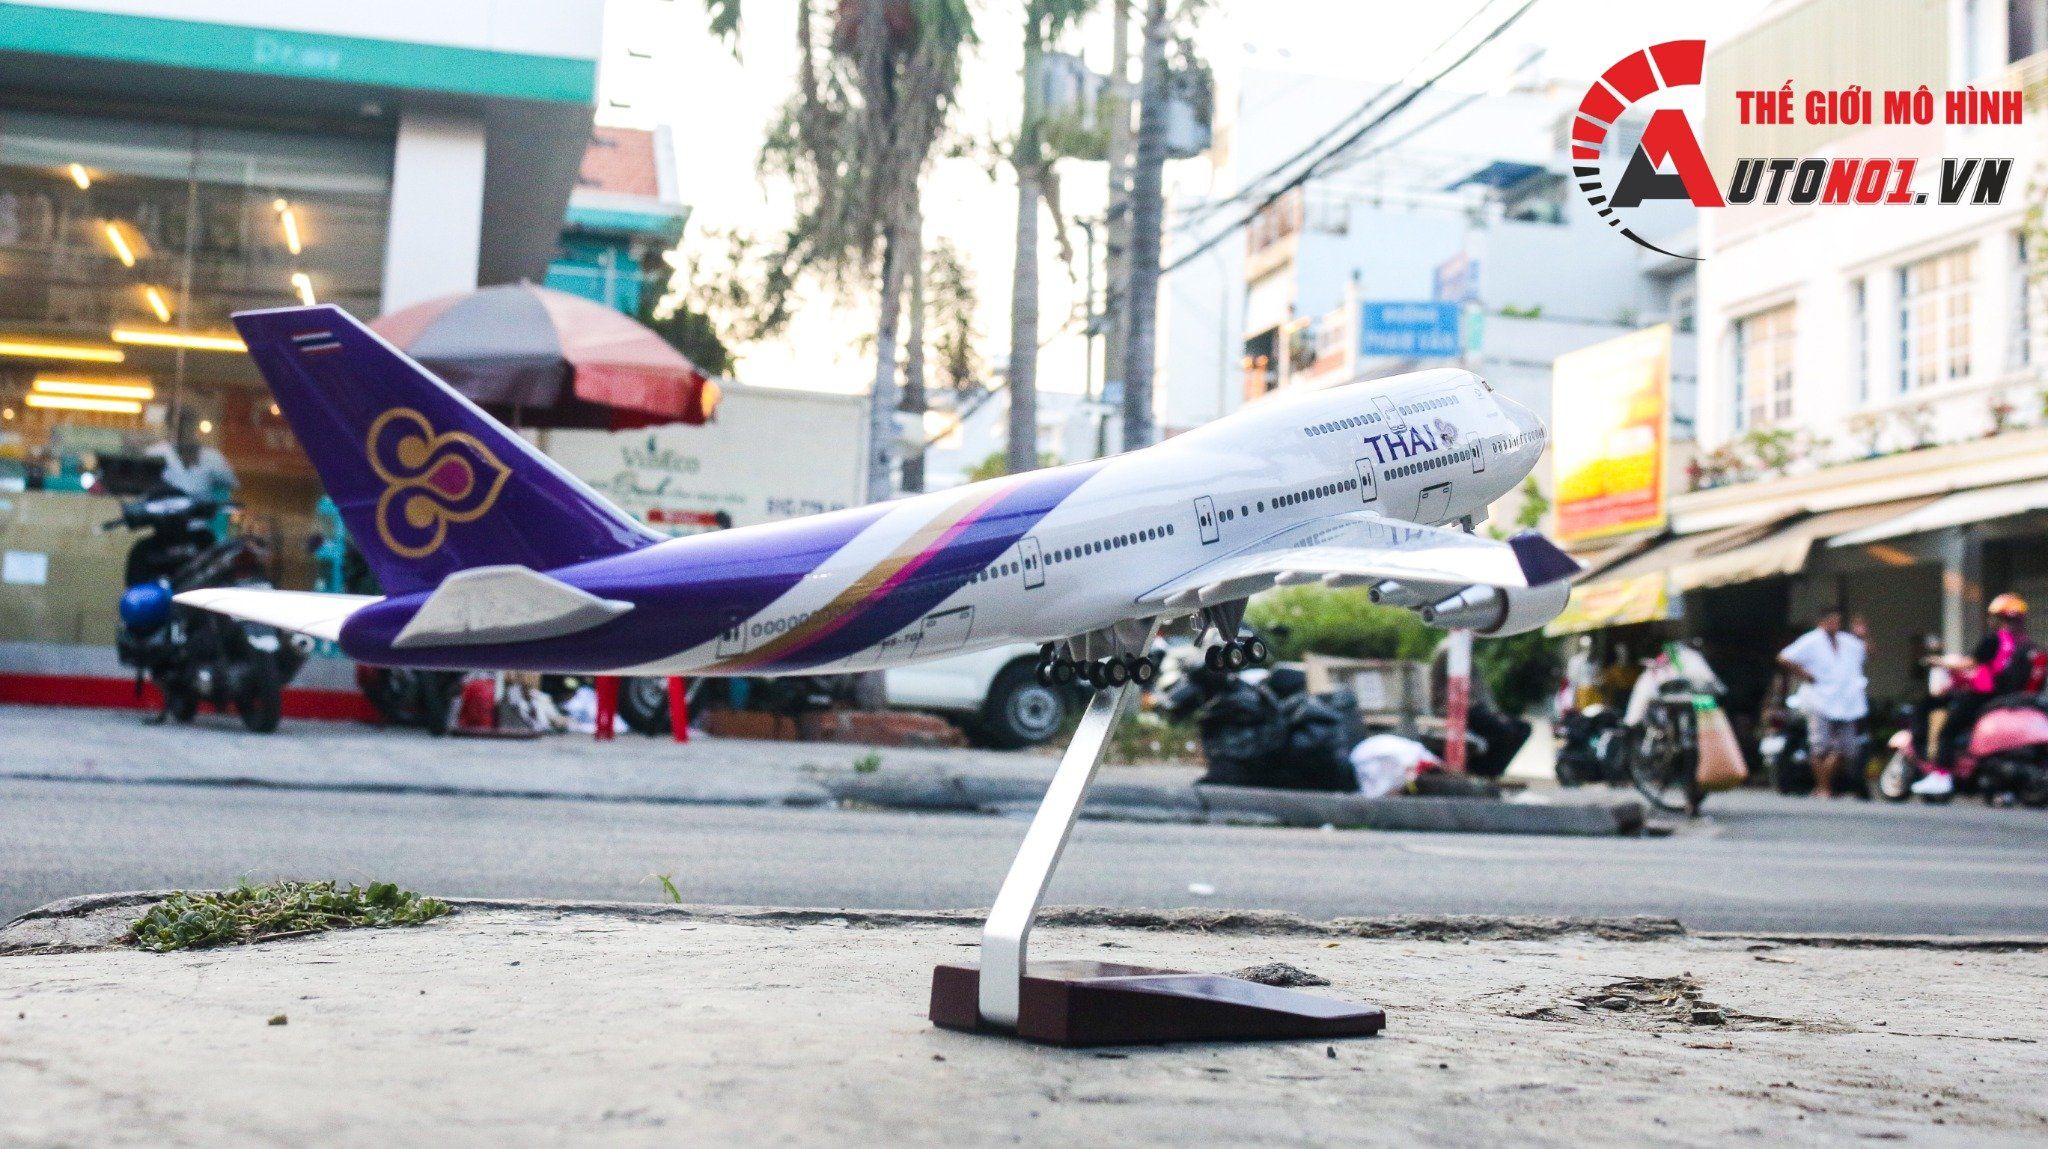  Mô hình máy bay Thái Lan Thai Airways Boeing B747 47cm 1:150 có đèn led tự động theo tiếng vỗ tay hoặc chạm MB47022 